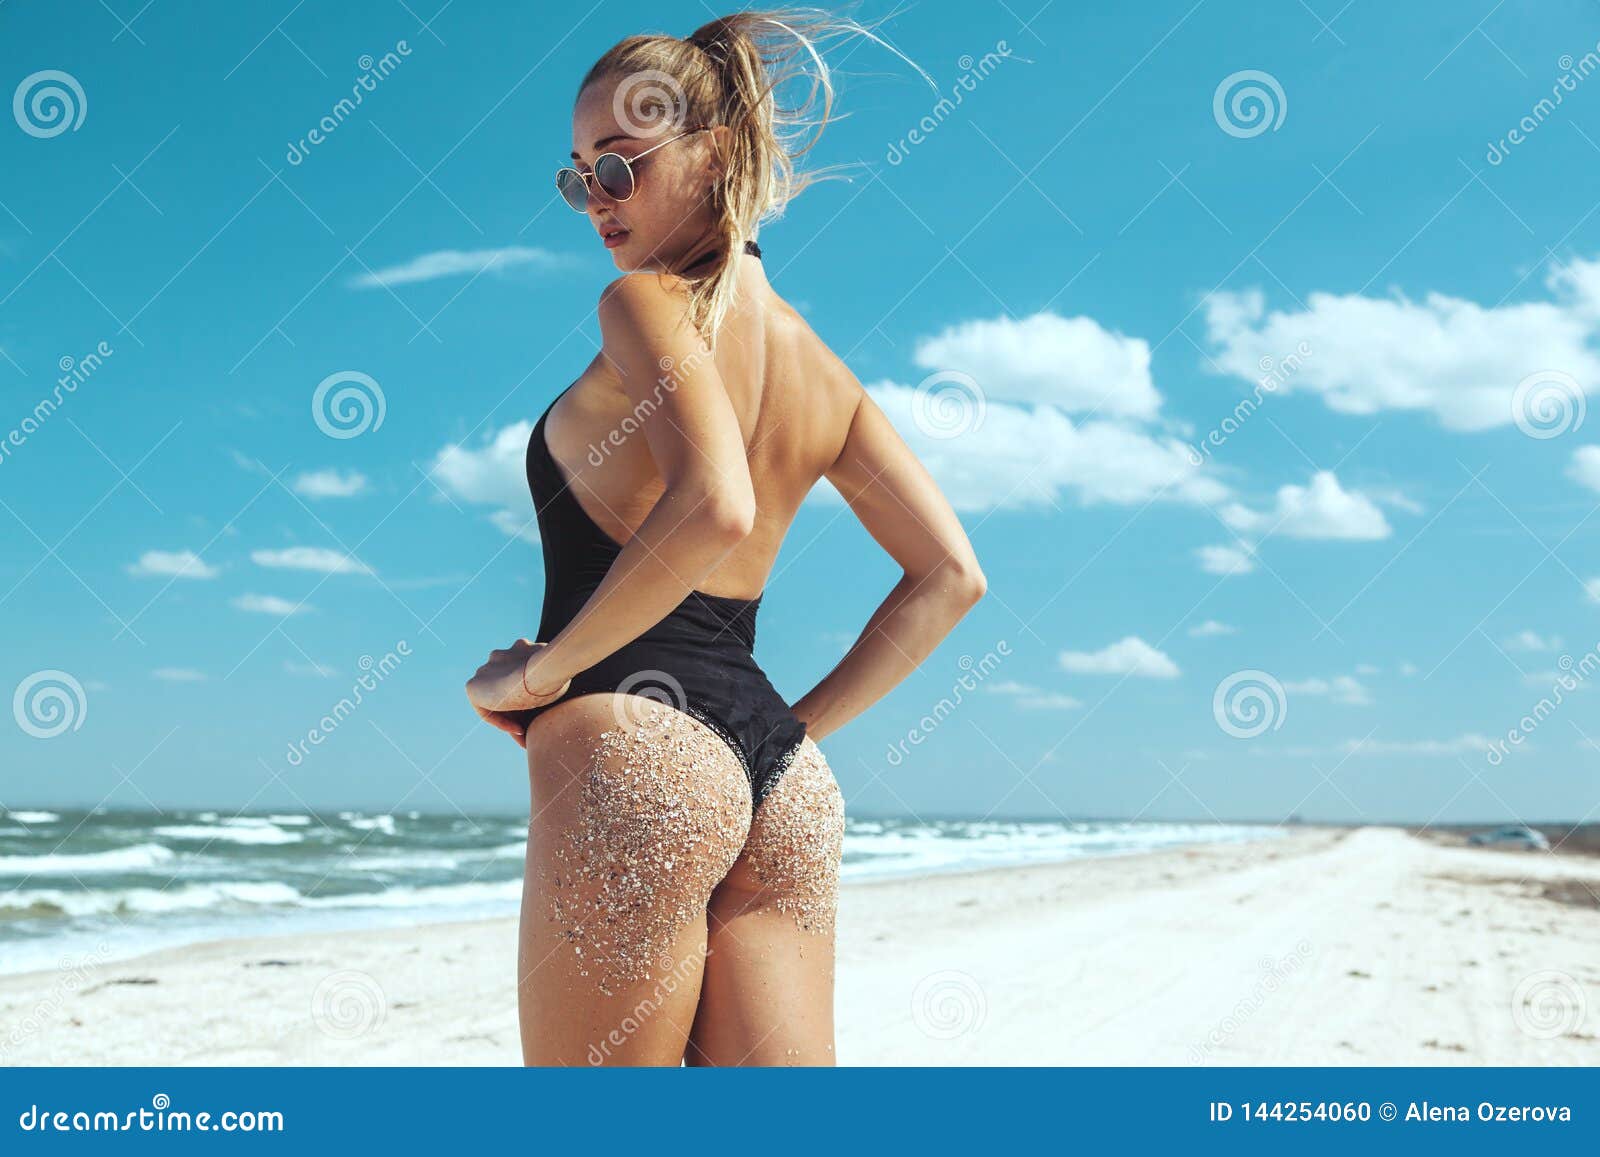 Images Of Beach Models Kerri Green Sexy Pics